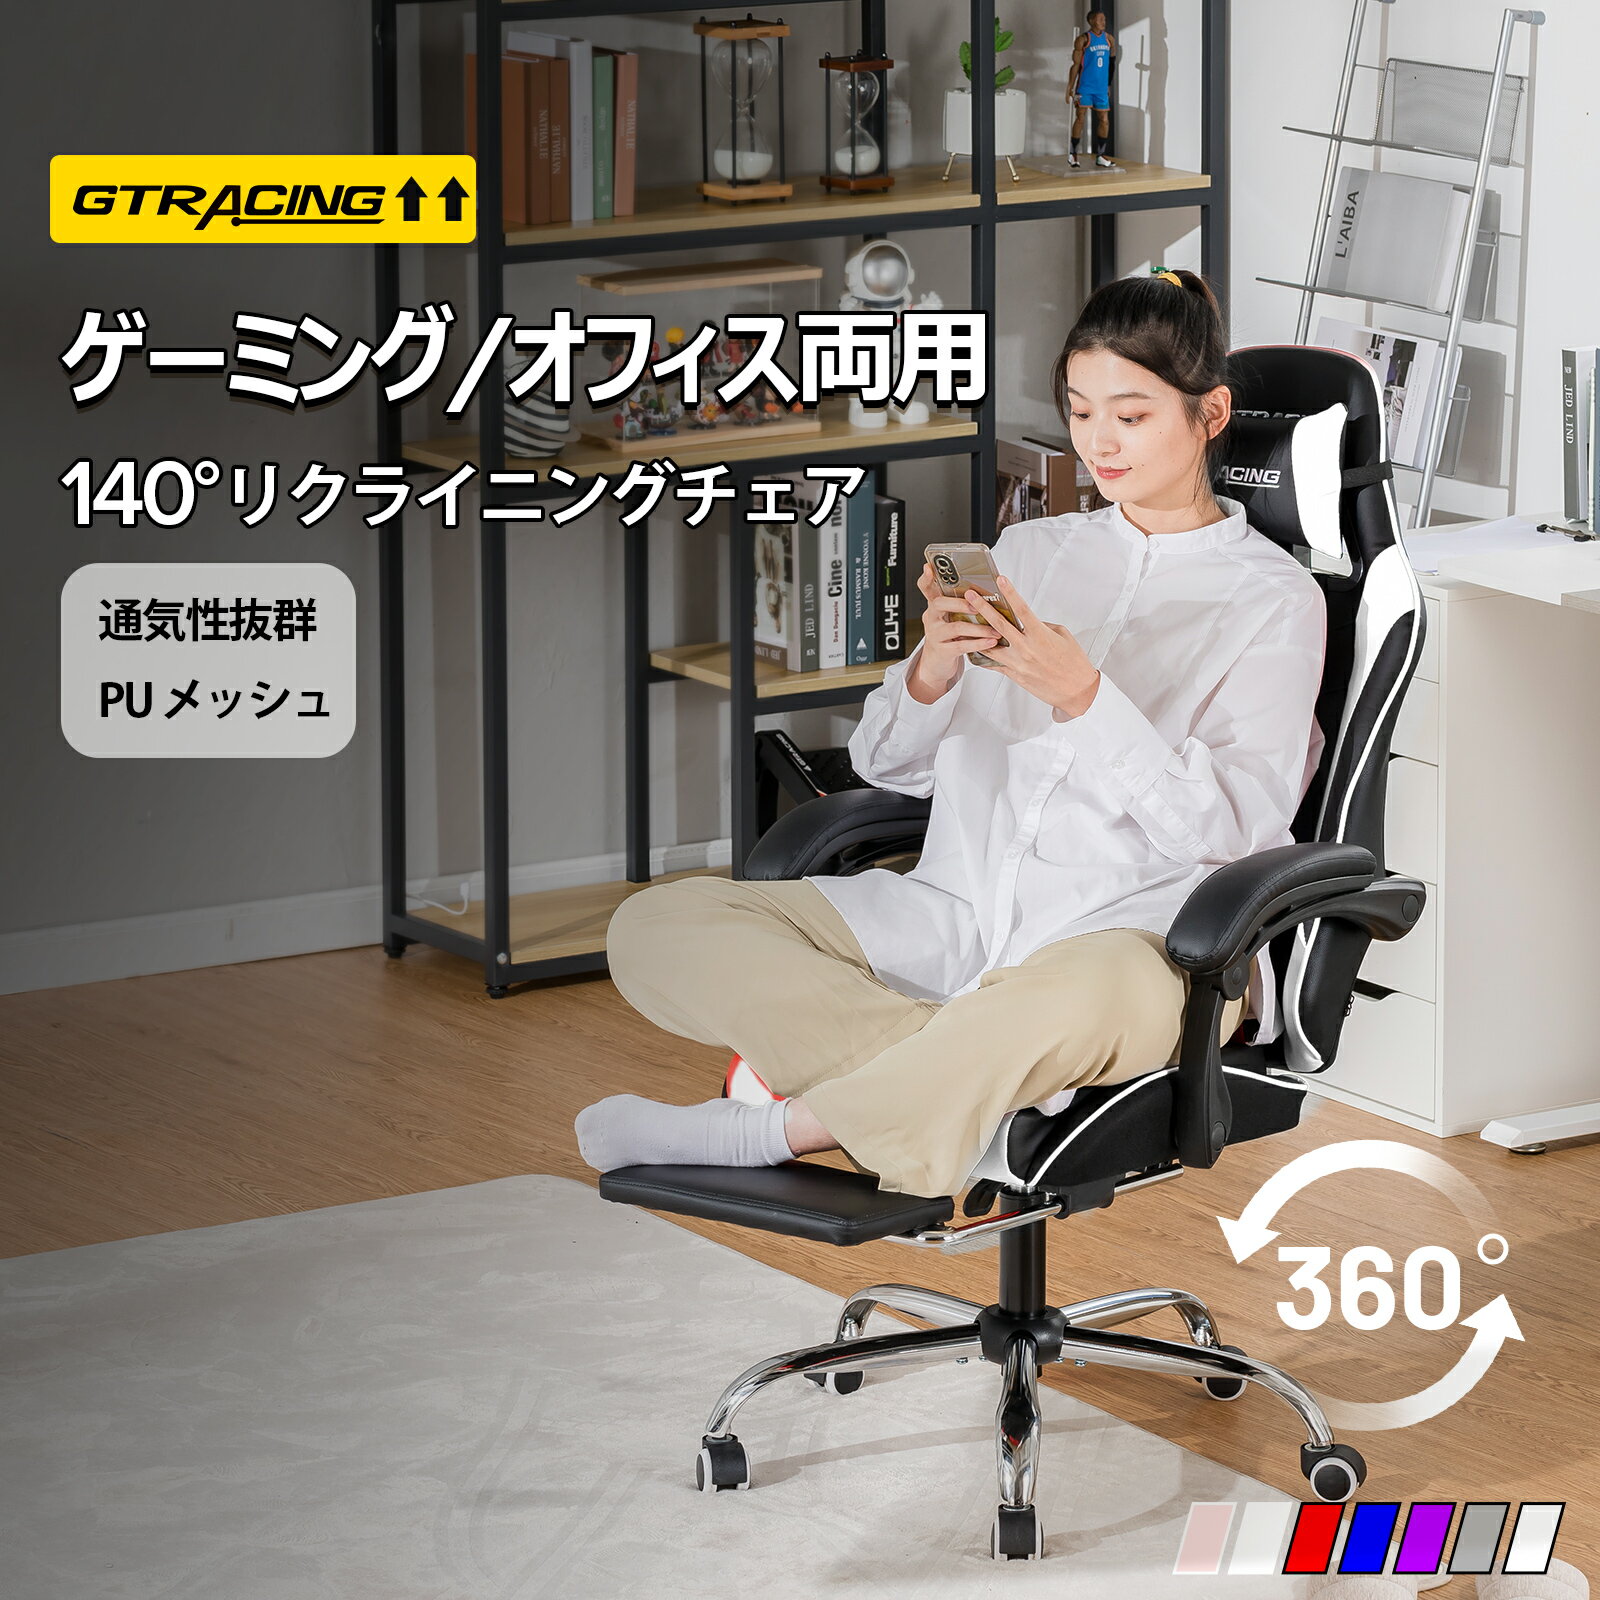 【送料無料】GTRACING オフィスチェア ゲーミングチェア チェア 椅子 いす オットマン リクライニング メッシュ ハイバック パソコンチェア ワークチェア デスクチェア ゲームチェア クッション 肘付き pcチェア フットレスト おしゃれ